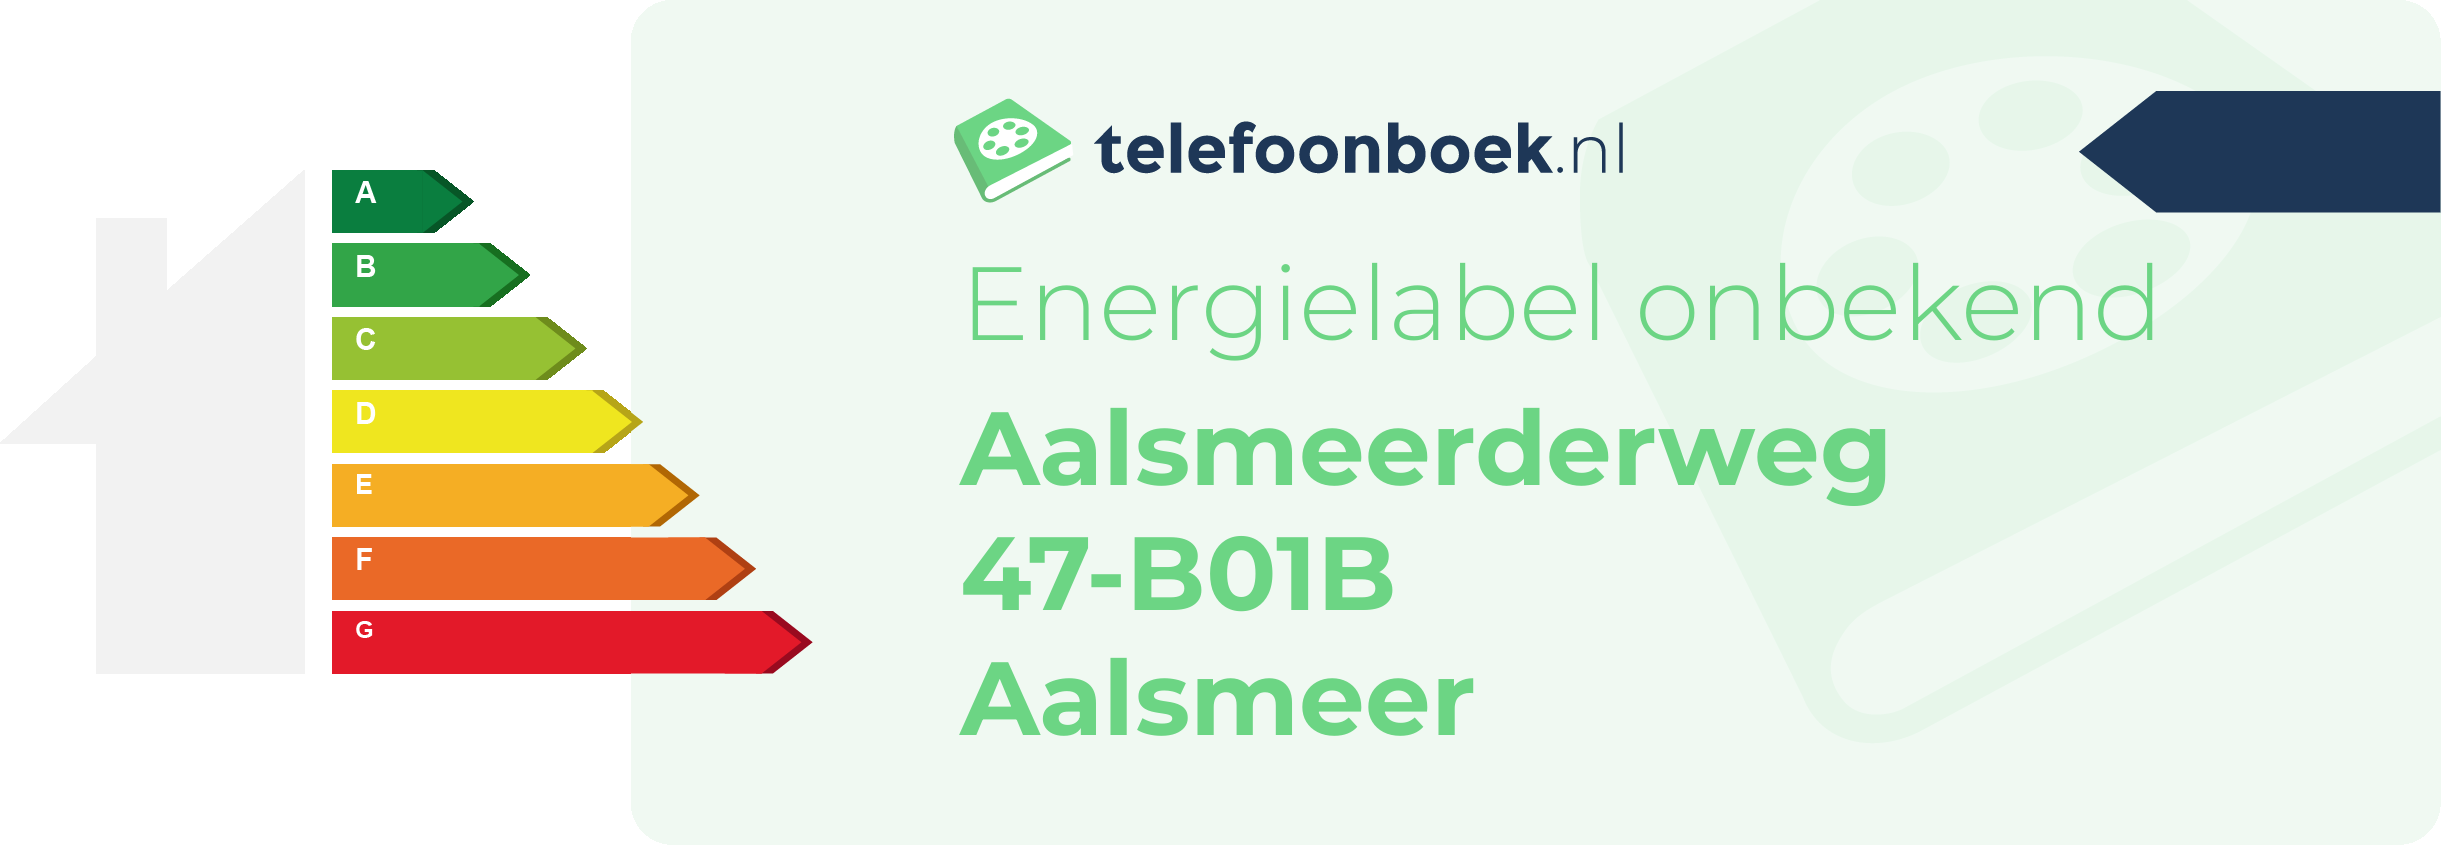 Energielabel Aalsmeerderweg 47-B01B Aalsmeer